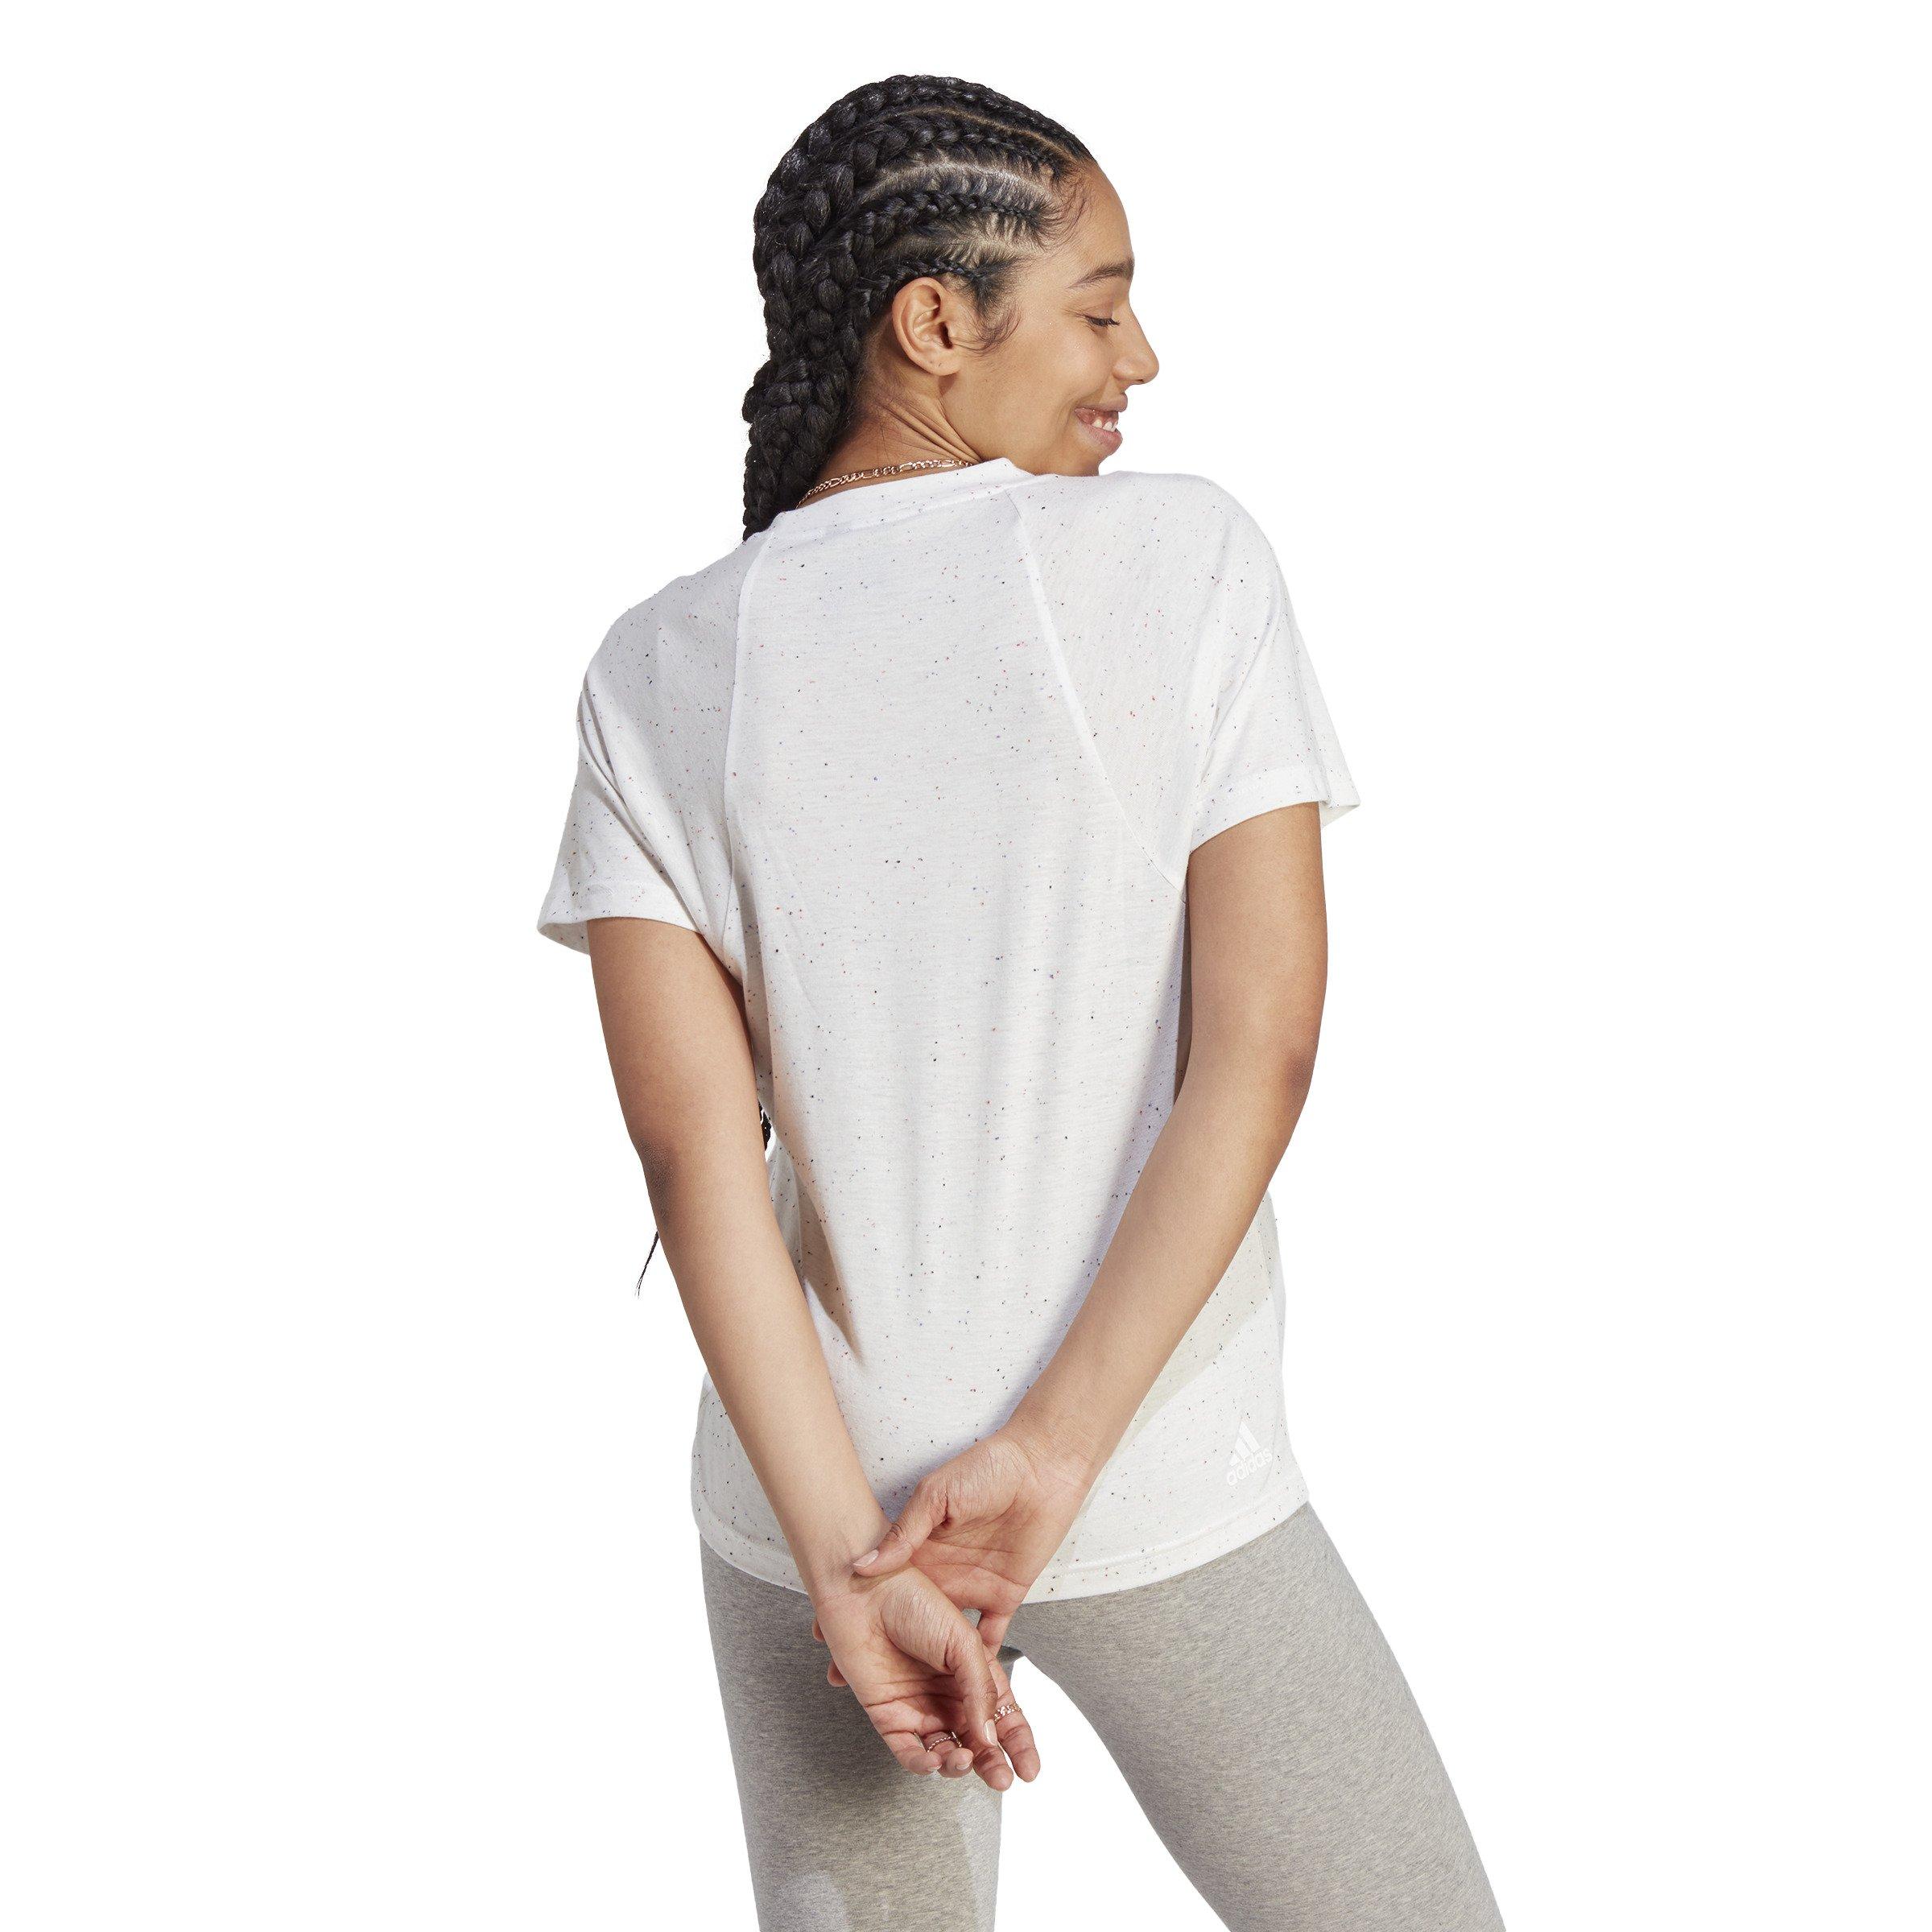 adidas Women's Future Icons Winners T-Shirt - White